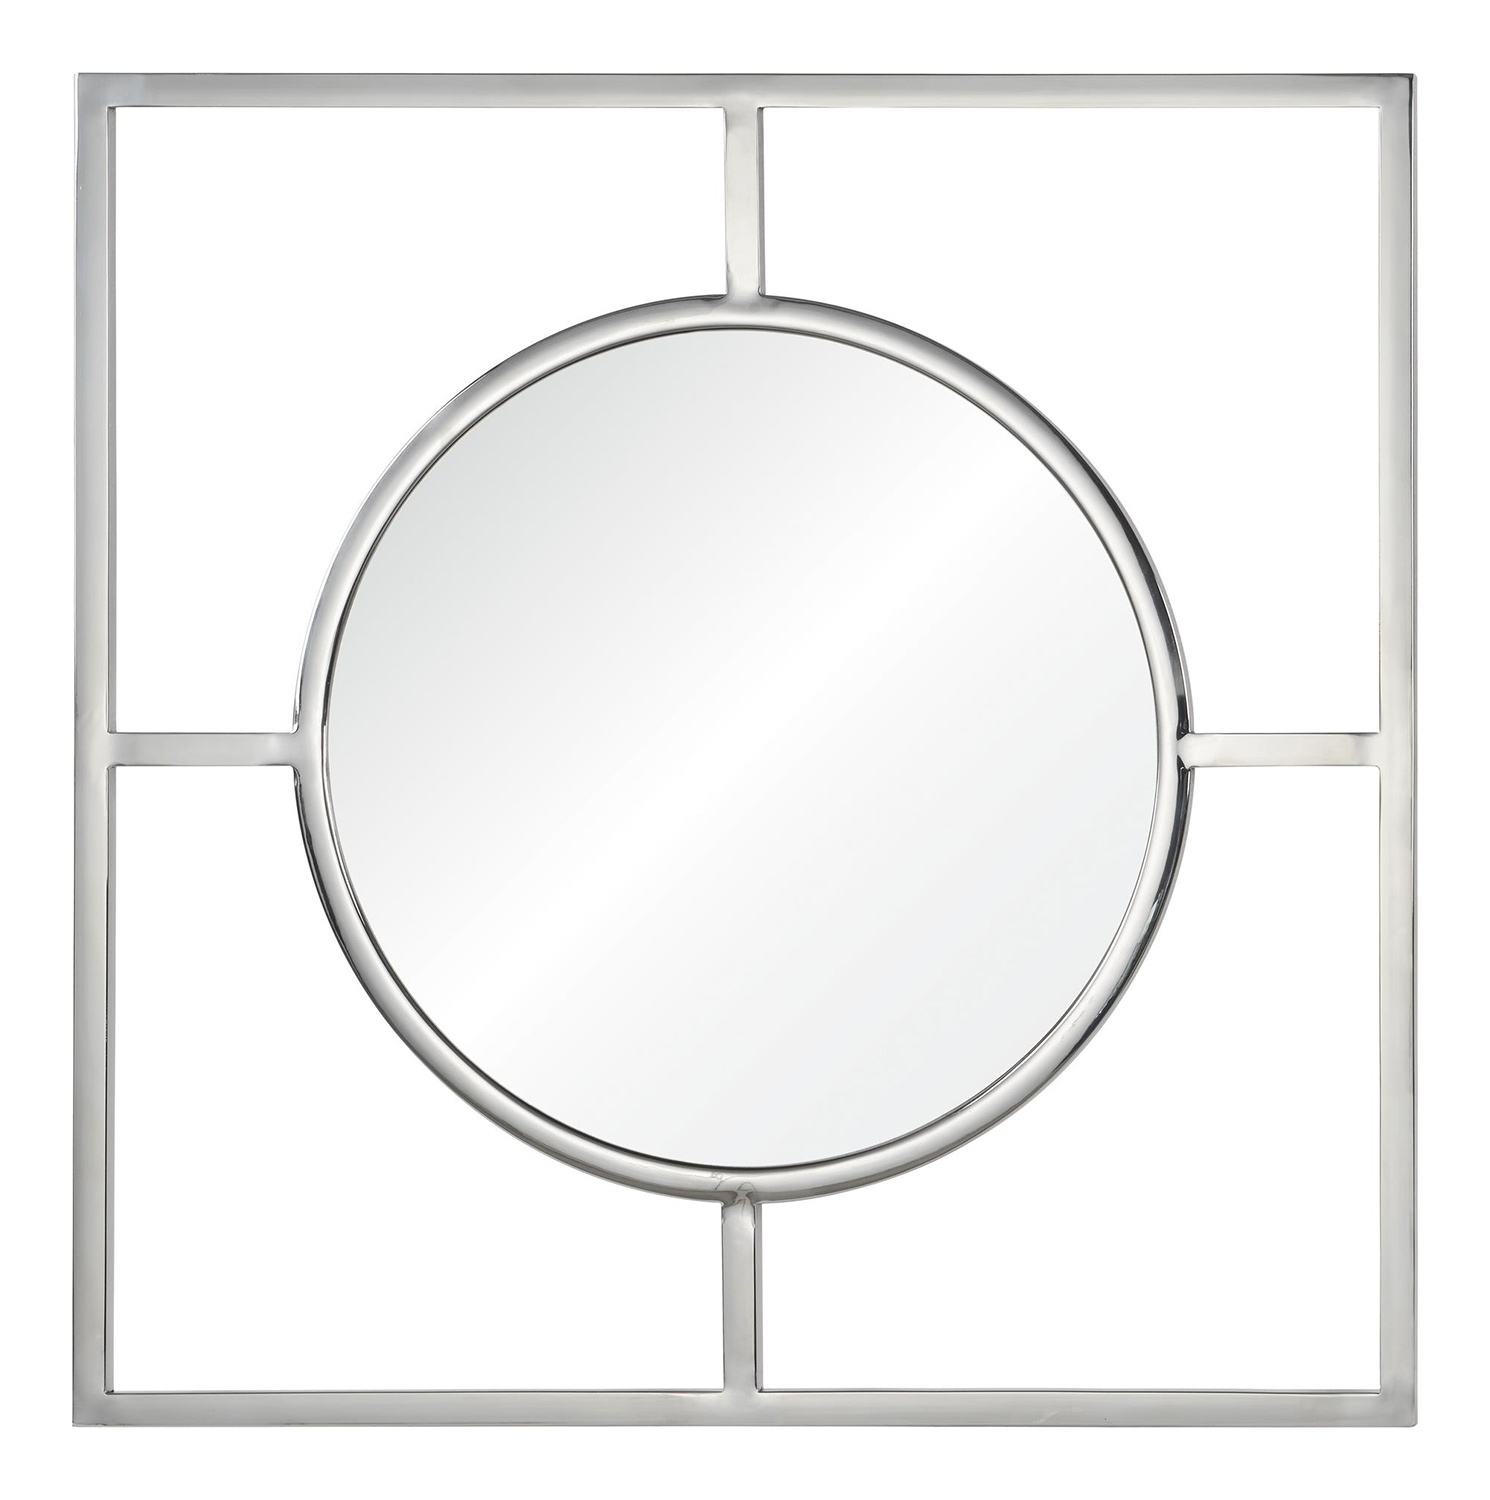 Ren-Wil Severn Mirror - Chrome